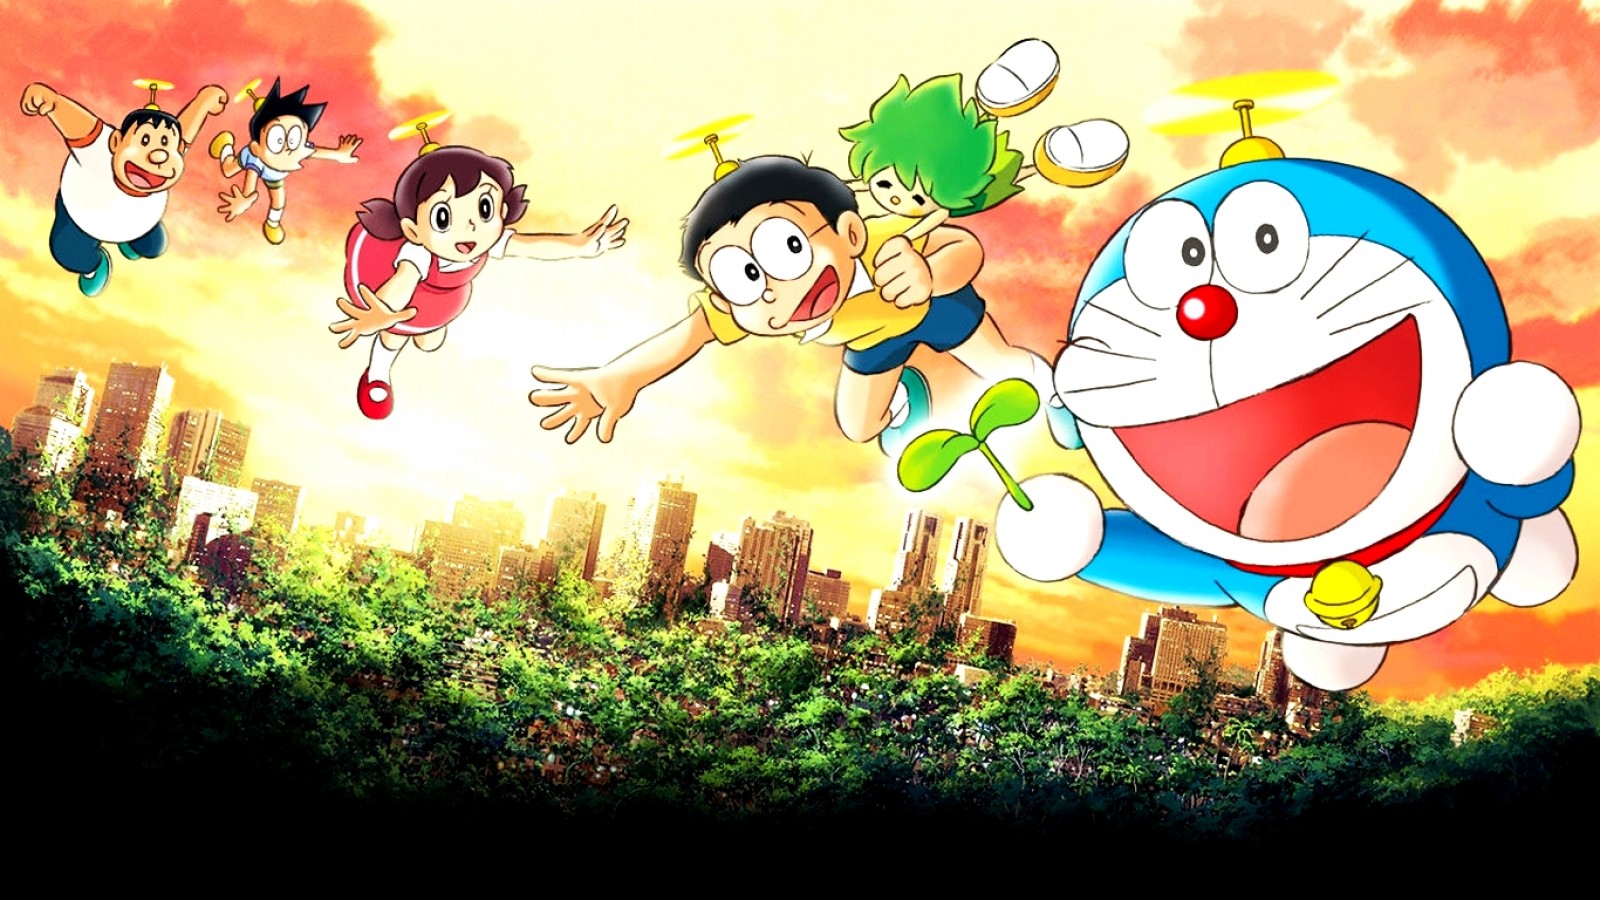 Có bao giờ bạn muốn tải hình nền Doraemon miễn phí không? Hãy nhanh chân ghé thăm trang web chia sẻ ảnh của chúng tôi để tải những bức ảnh của Doraemon tuyệt đẹp nhất về cho mình. Với hơn 6000 bức ảnh chất lượng cao, bạn chắc chắn sẽ tìm được bức ảnh ưng ý nhất.